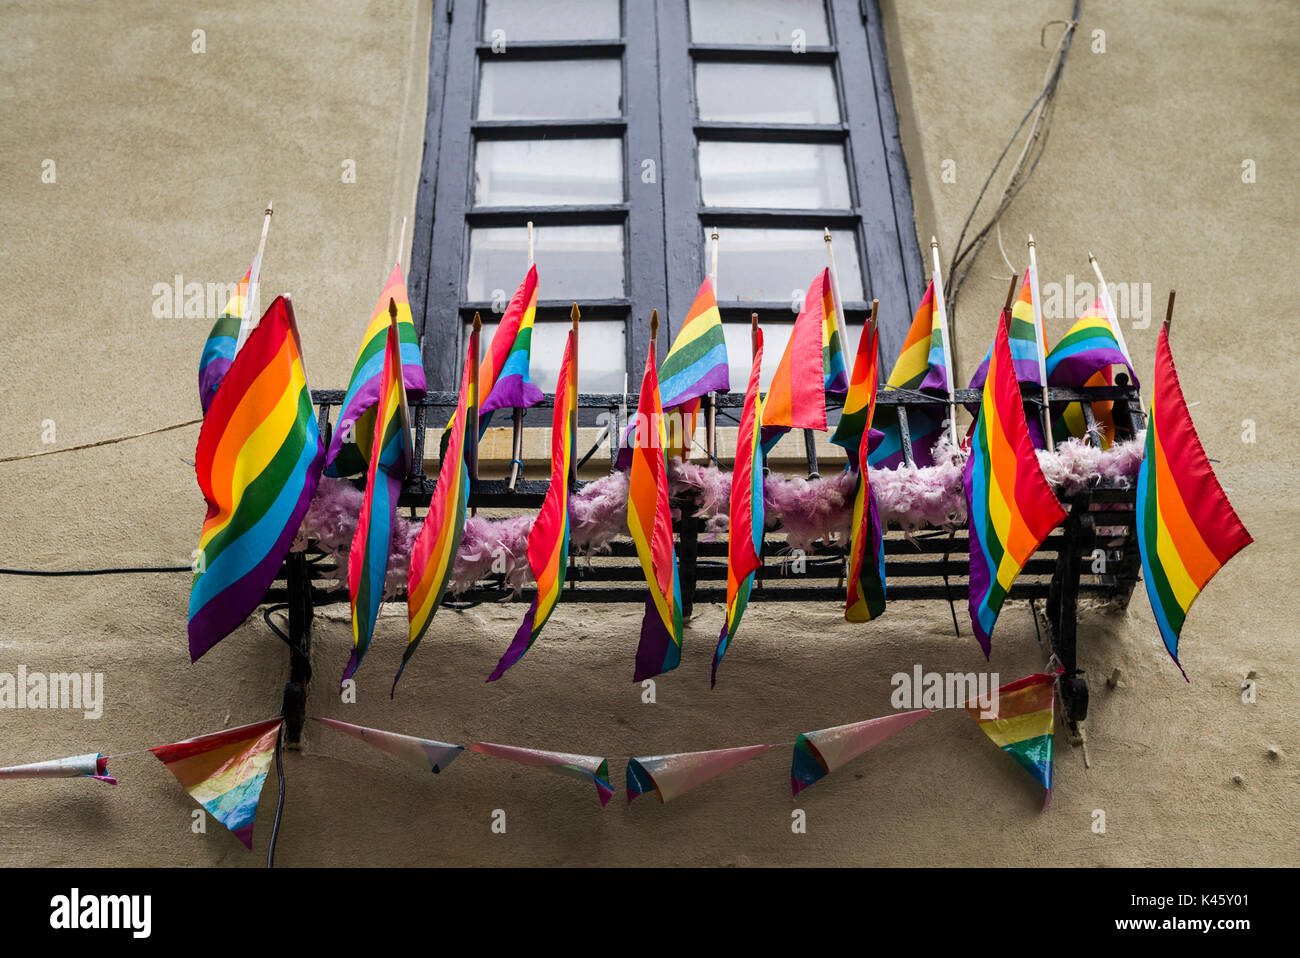 Los Estados Unidos, Nueva York, ciudad de Nueva York, Manhattan, Greenwich village, banderas del arco iris fuera del Stonewall Inn, lugar de nacimiento de nosotros Gay Liberation Foto de stock